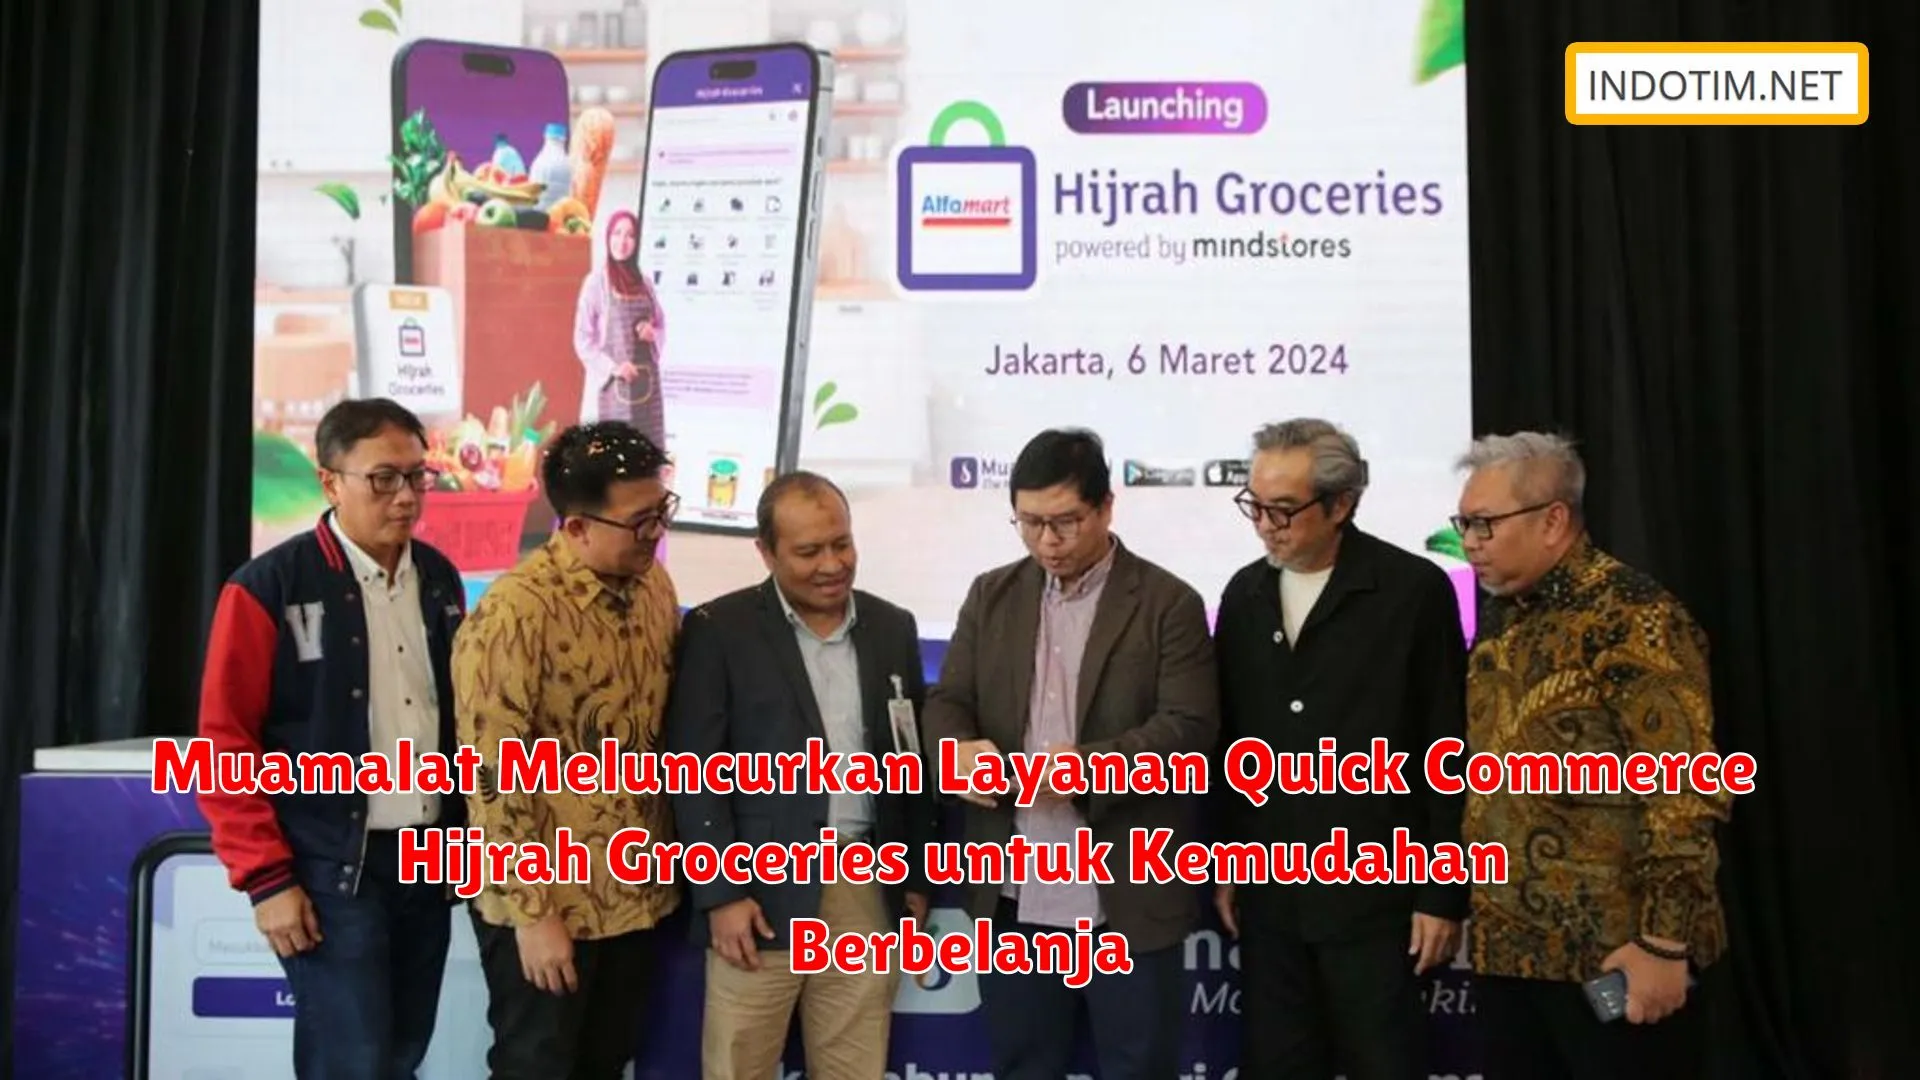 Muamalat Meluncurkan Layanan Quick Commerce Hijrah Groceries untuk Kemudahan Berbelanja